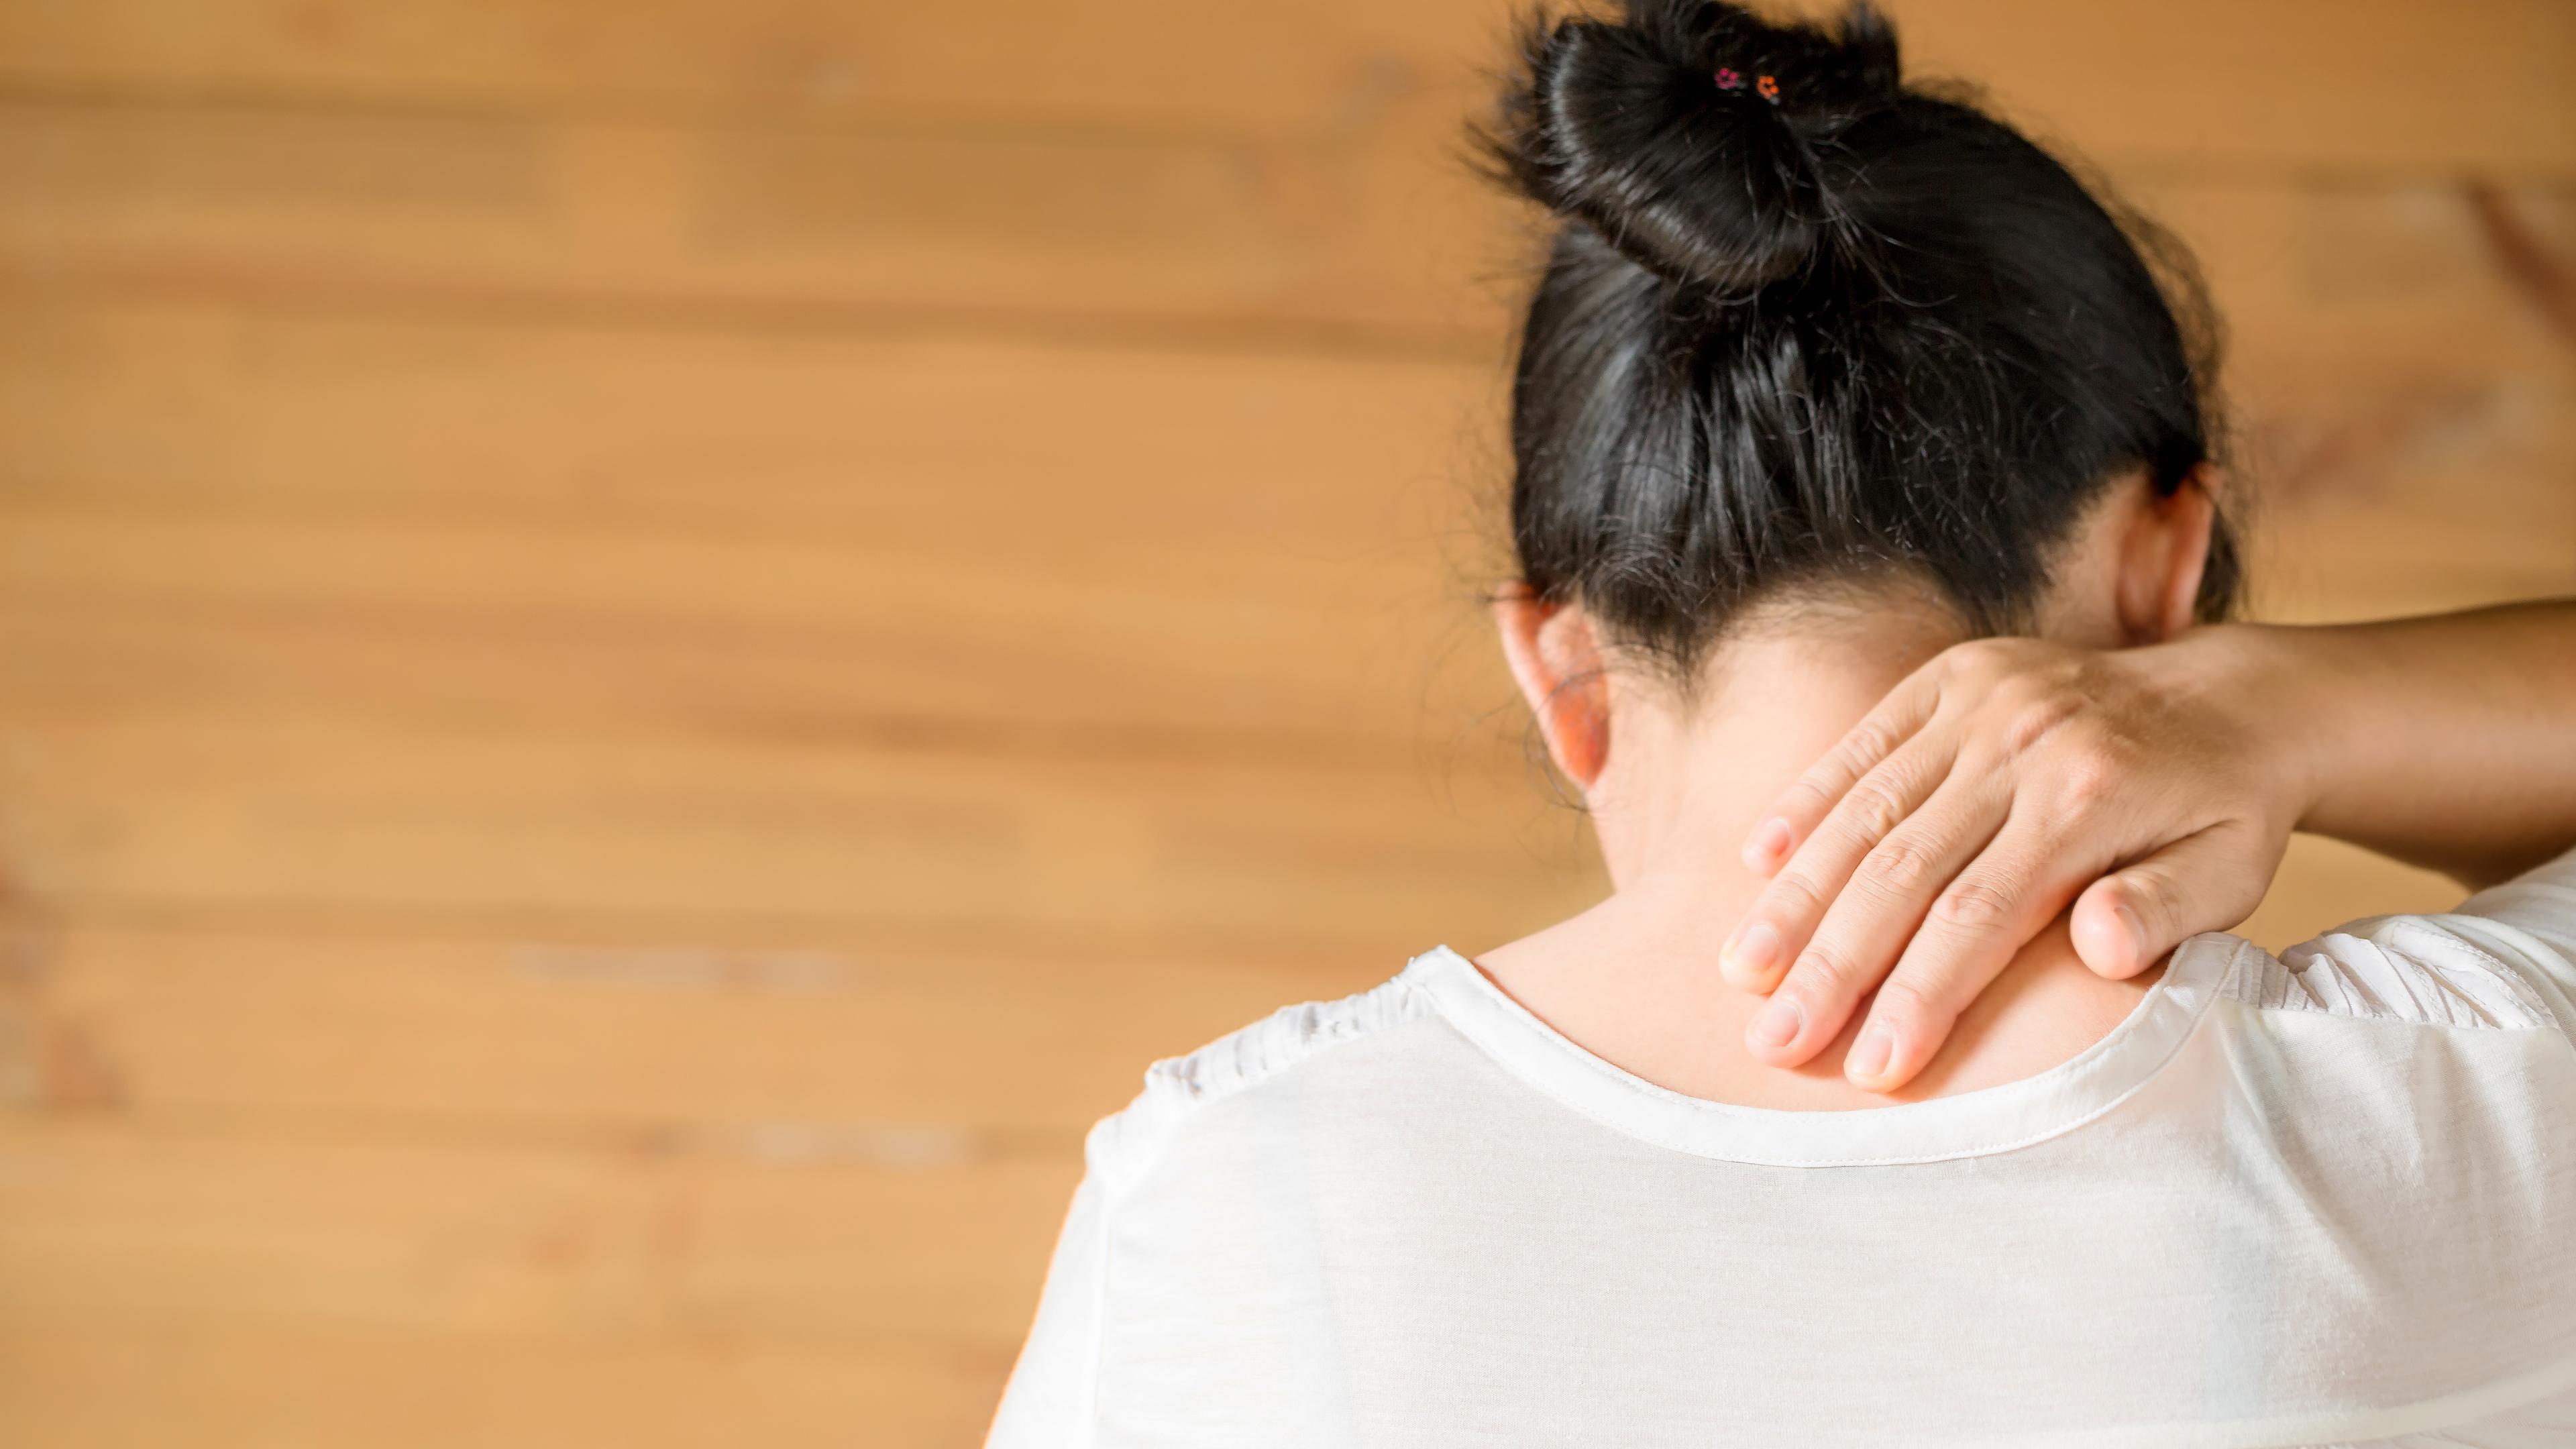 Хроническая боль может влиять на регулирование эмоций